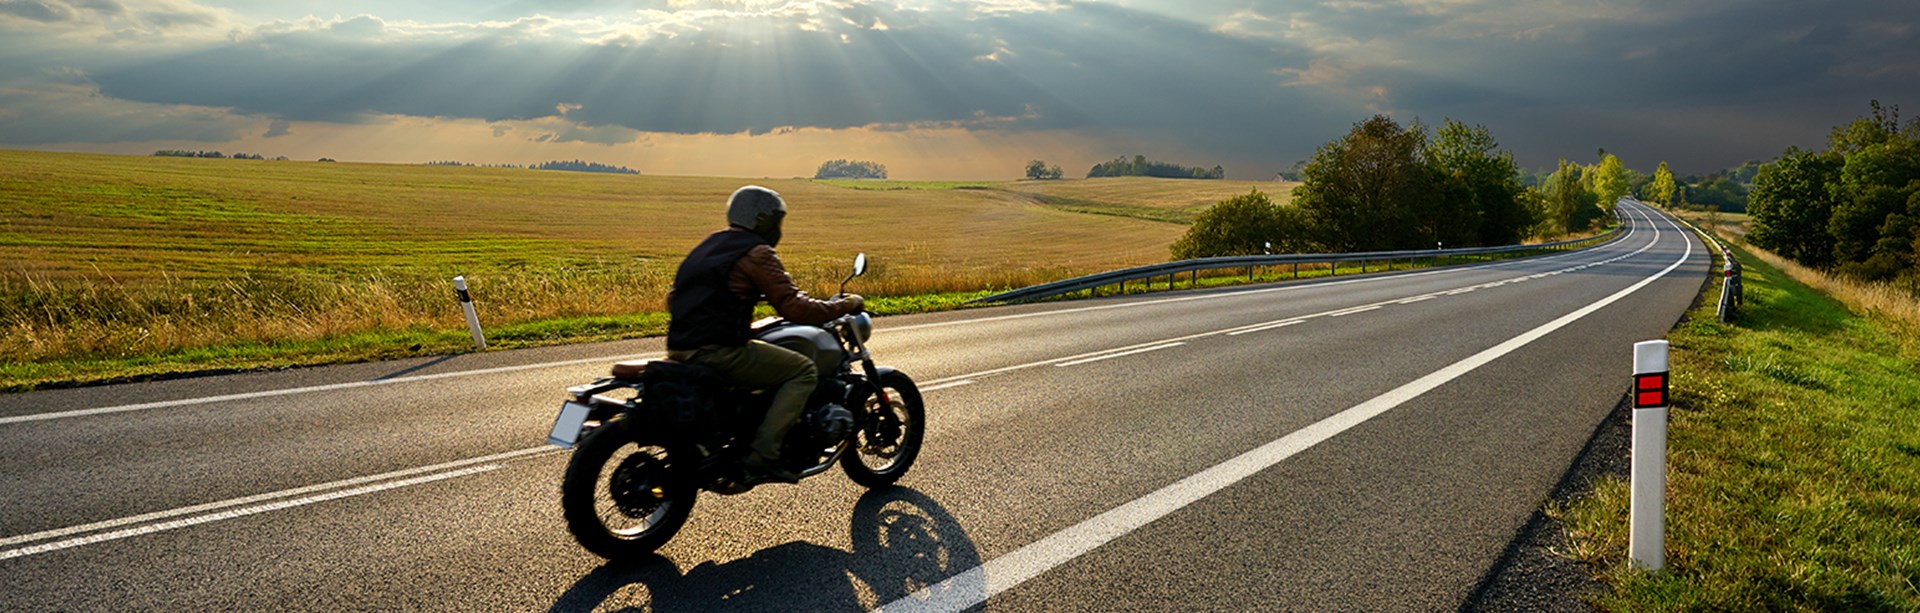 Motorcyklist kör på en lång en asfalterad väg